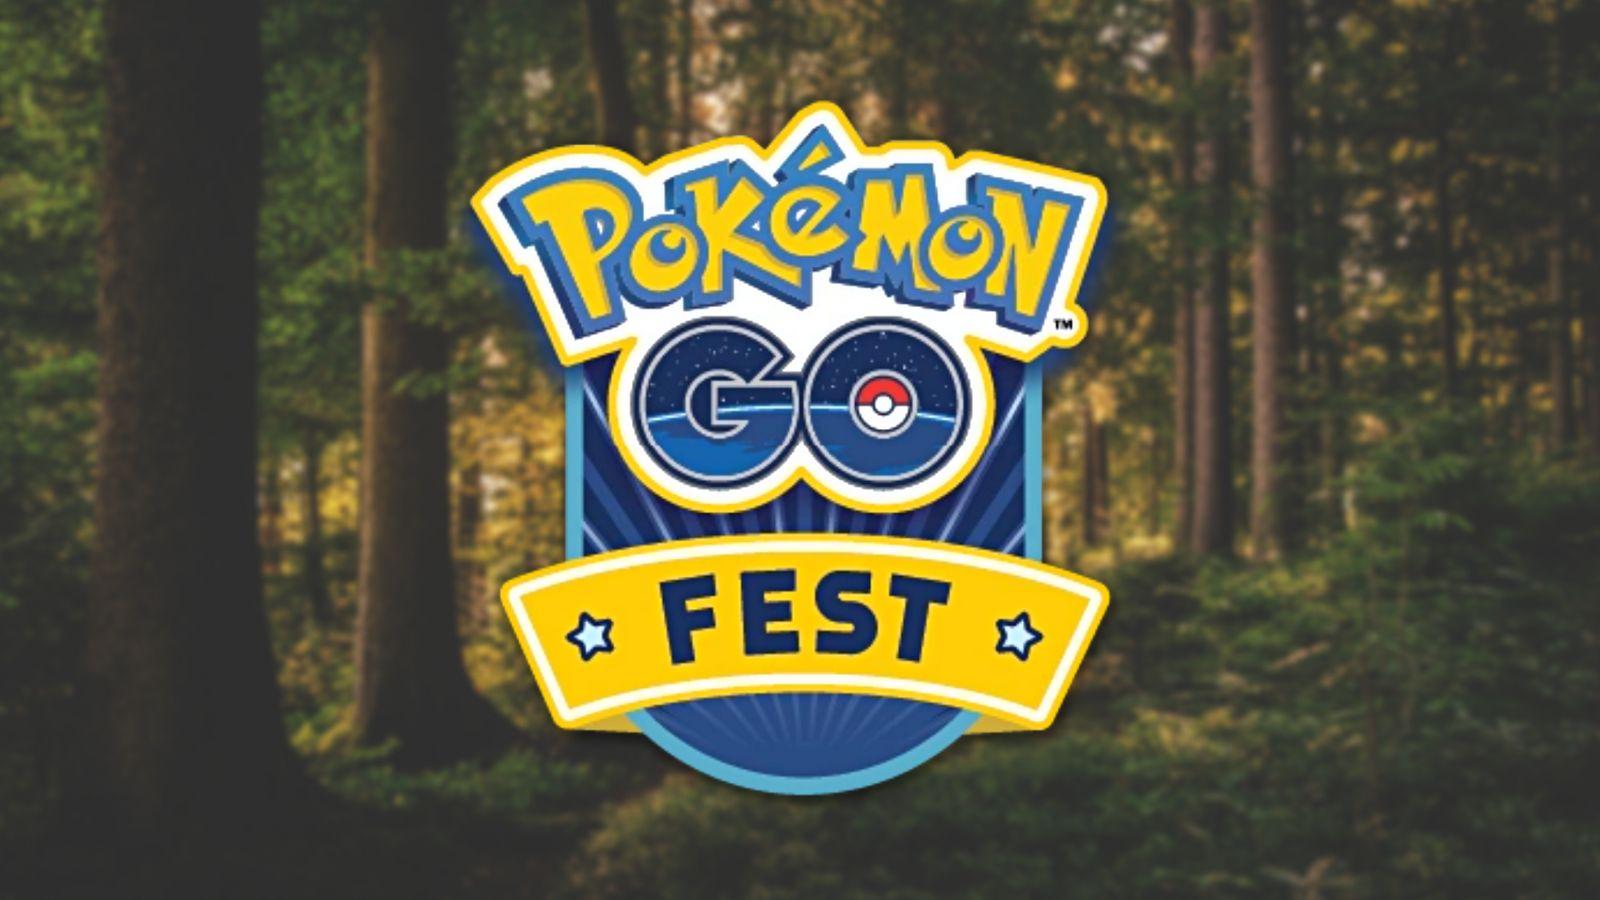 pokemon go fest logo evergreen forest header